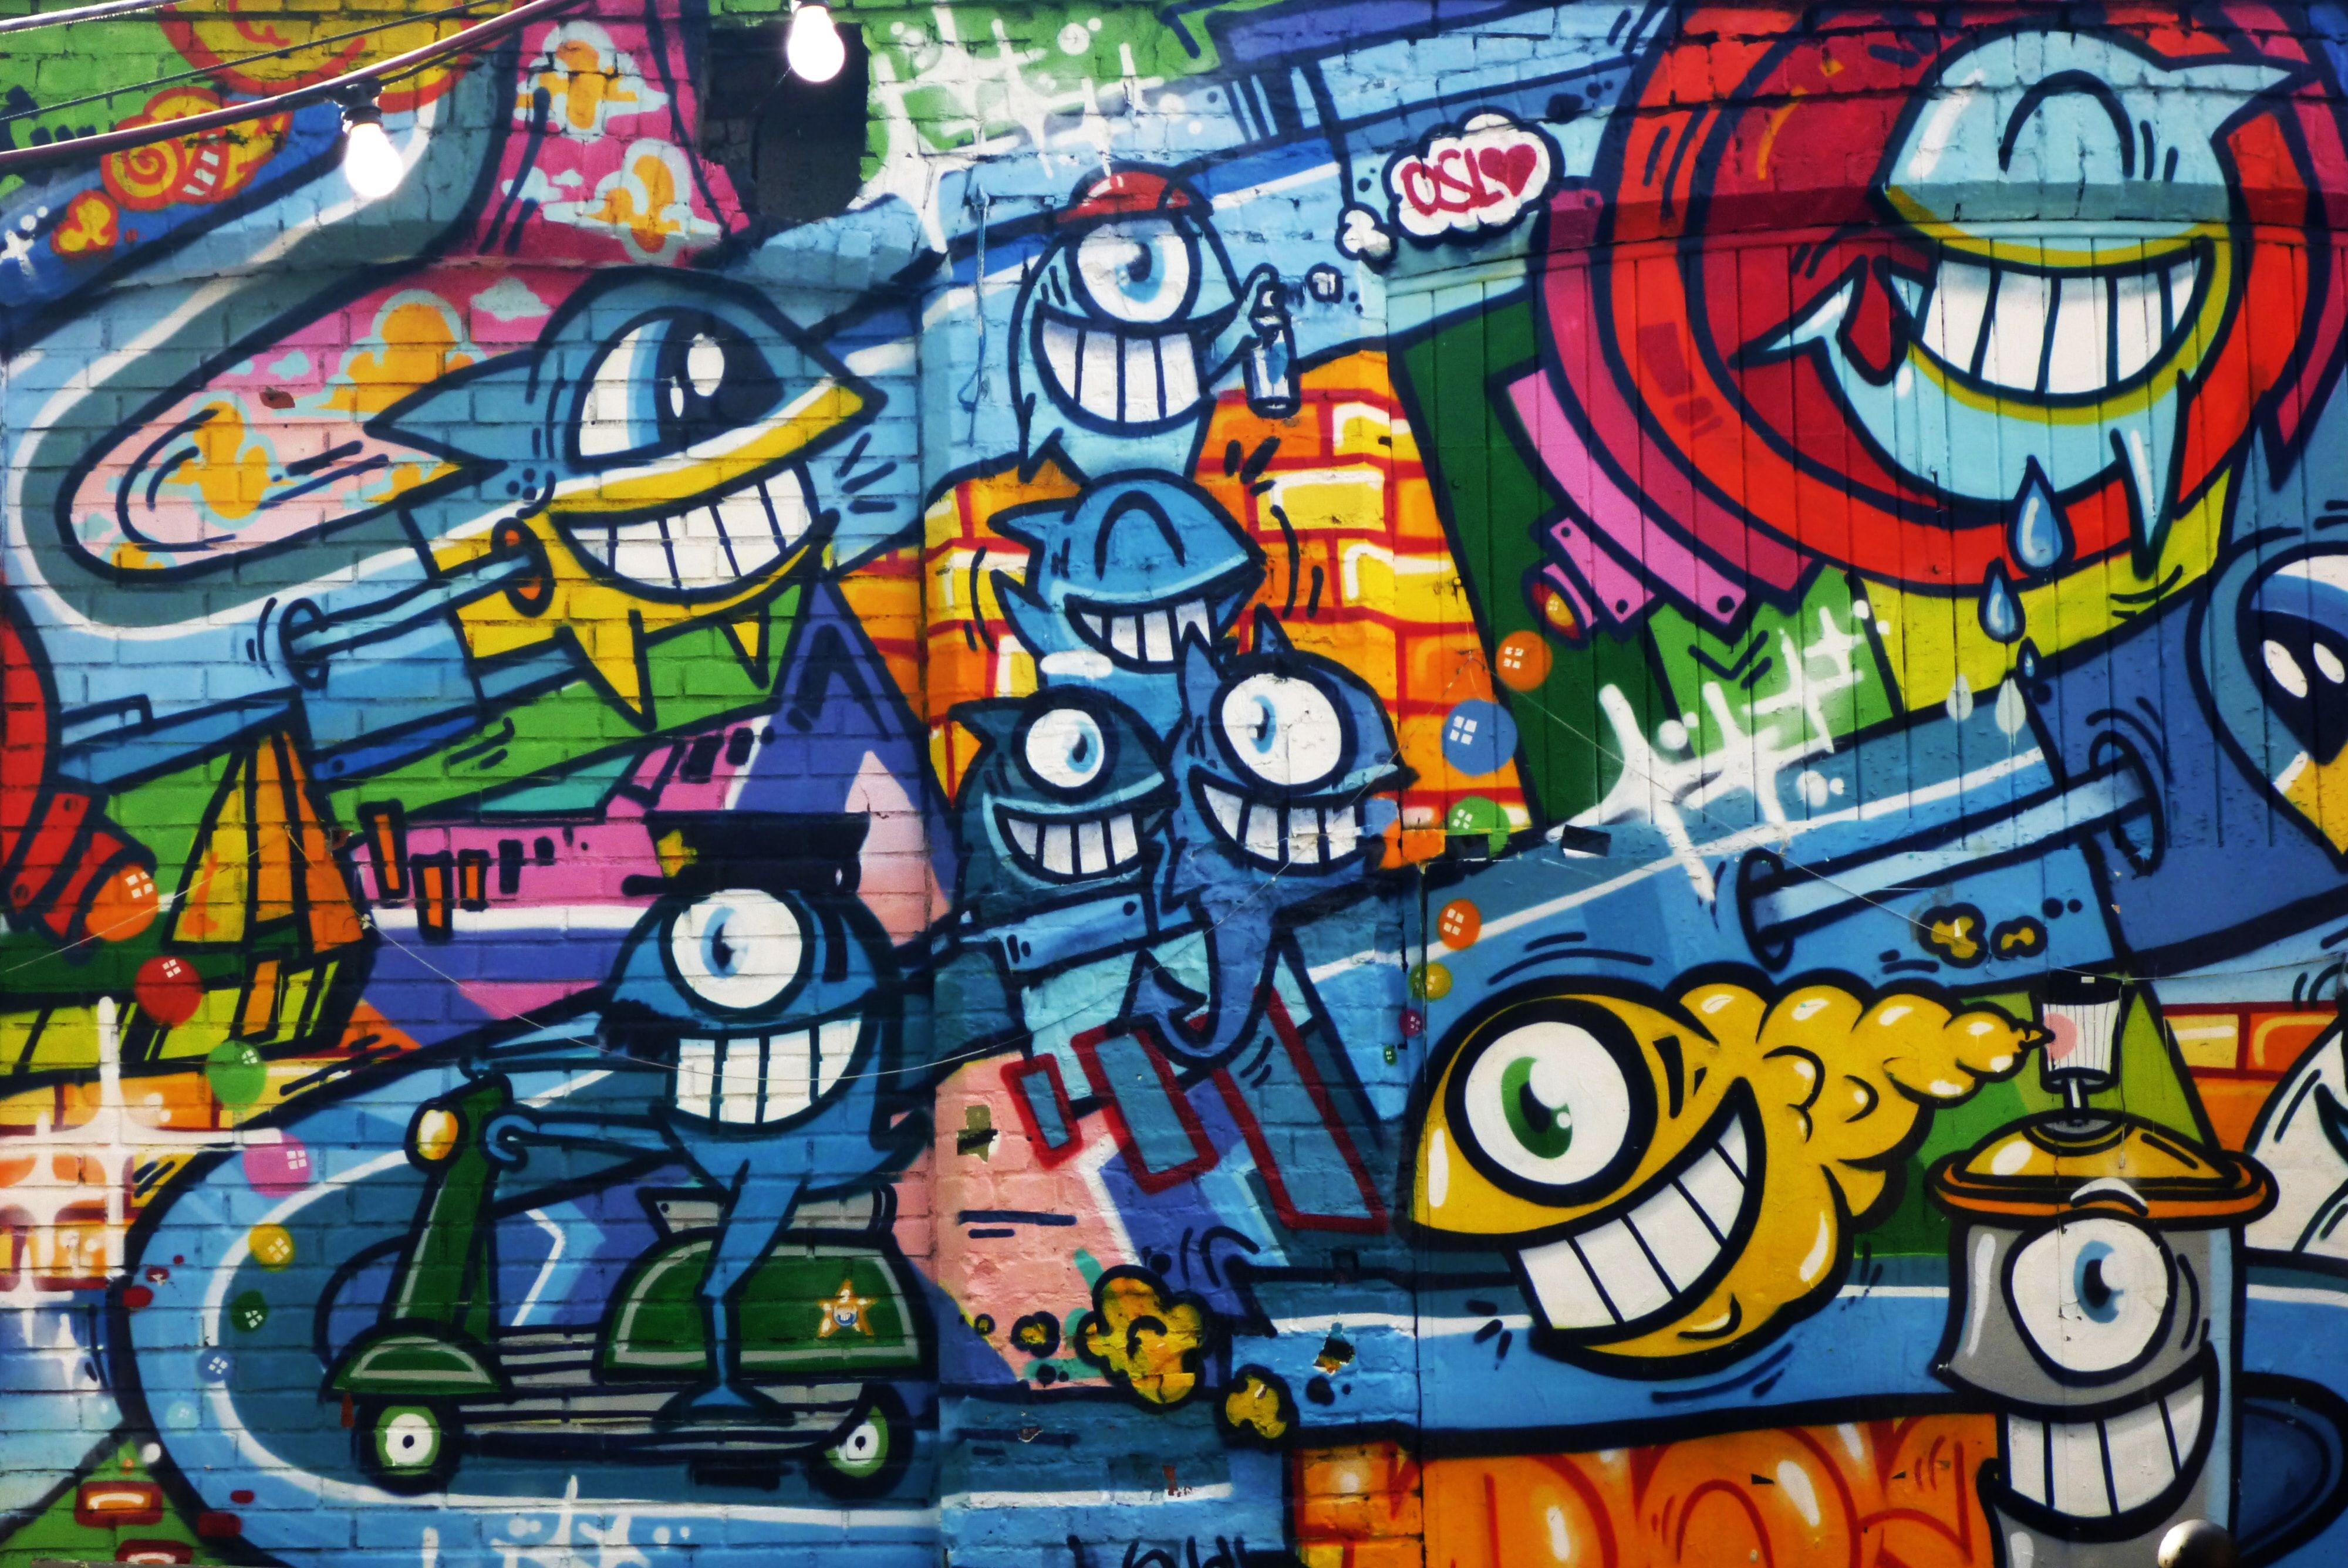 4000 x 2672 · jpeg - Graffiti Cartoon Wallpapers - Top Free Graffiti Cartoon Backgrounds ...